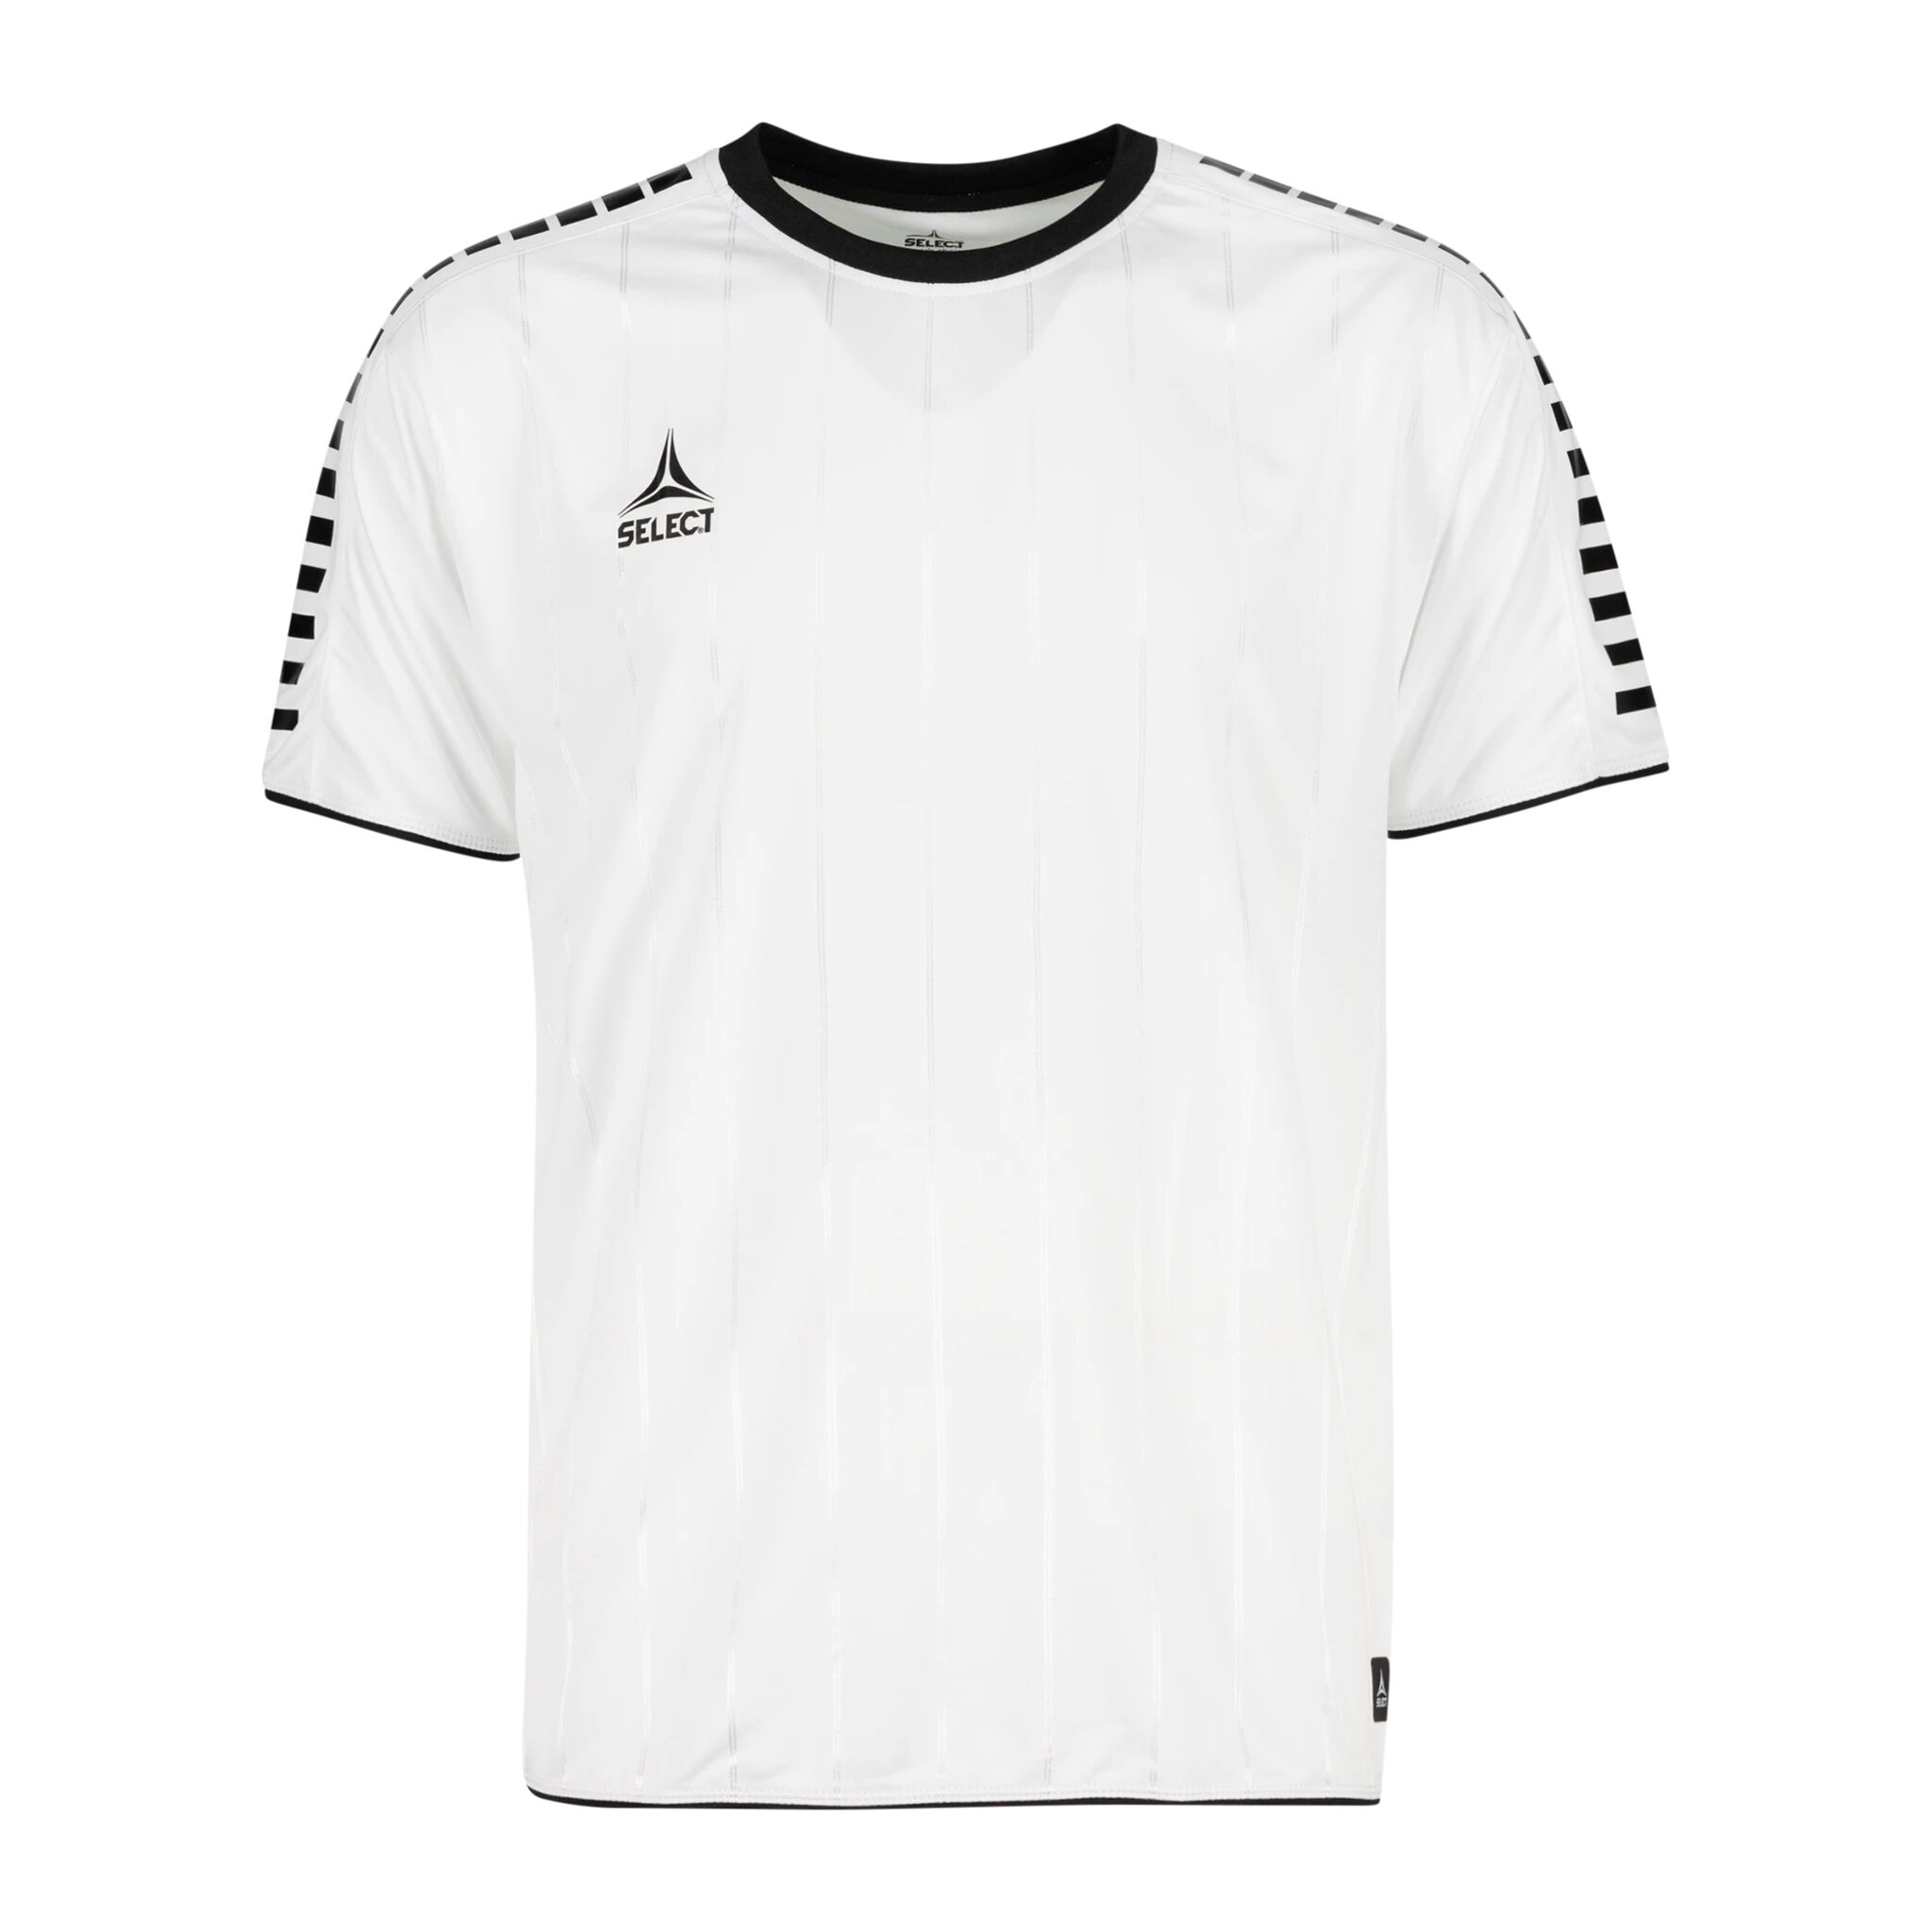 Select Player shirt S/S Argentina, fotballtrøye senior XXL WHITE/BLACK